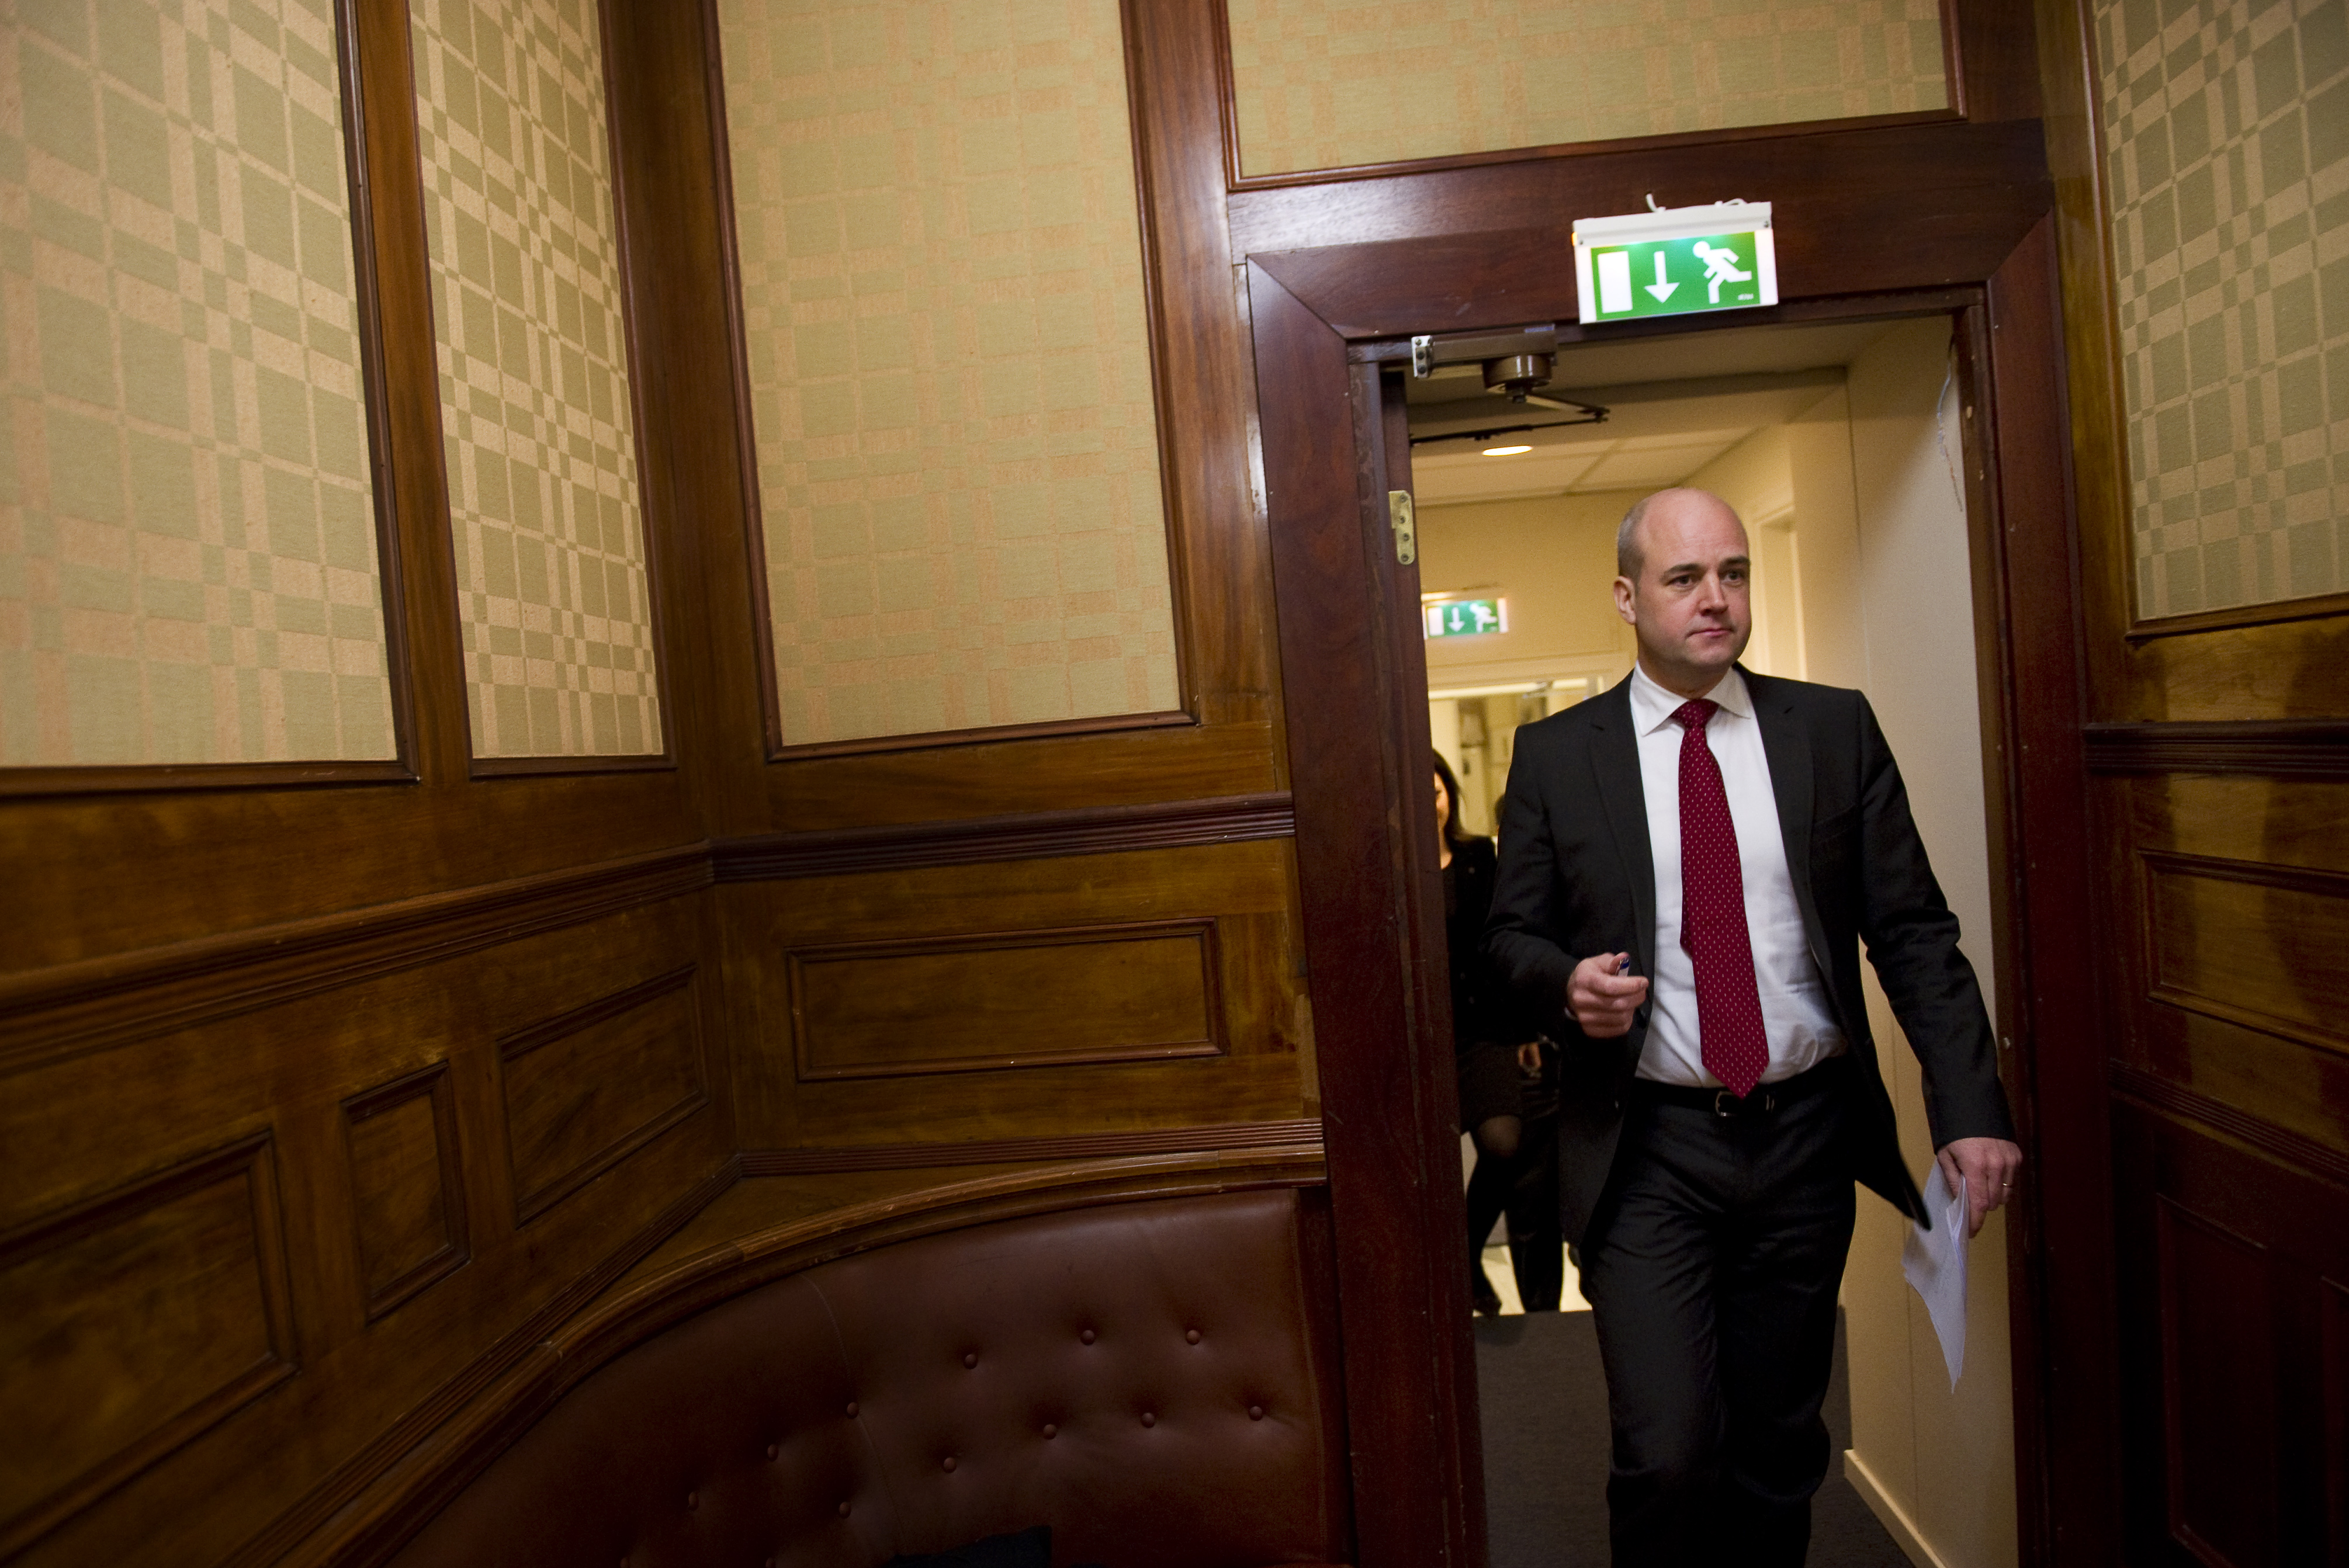 Dessutom är förslaget underfinansierat, hävdar Reinfeldt.